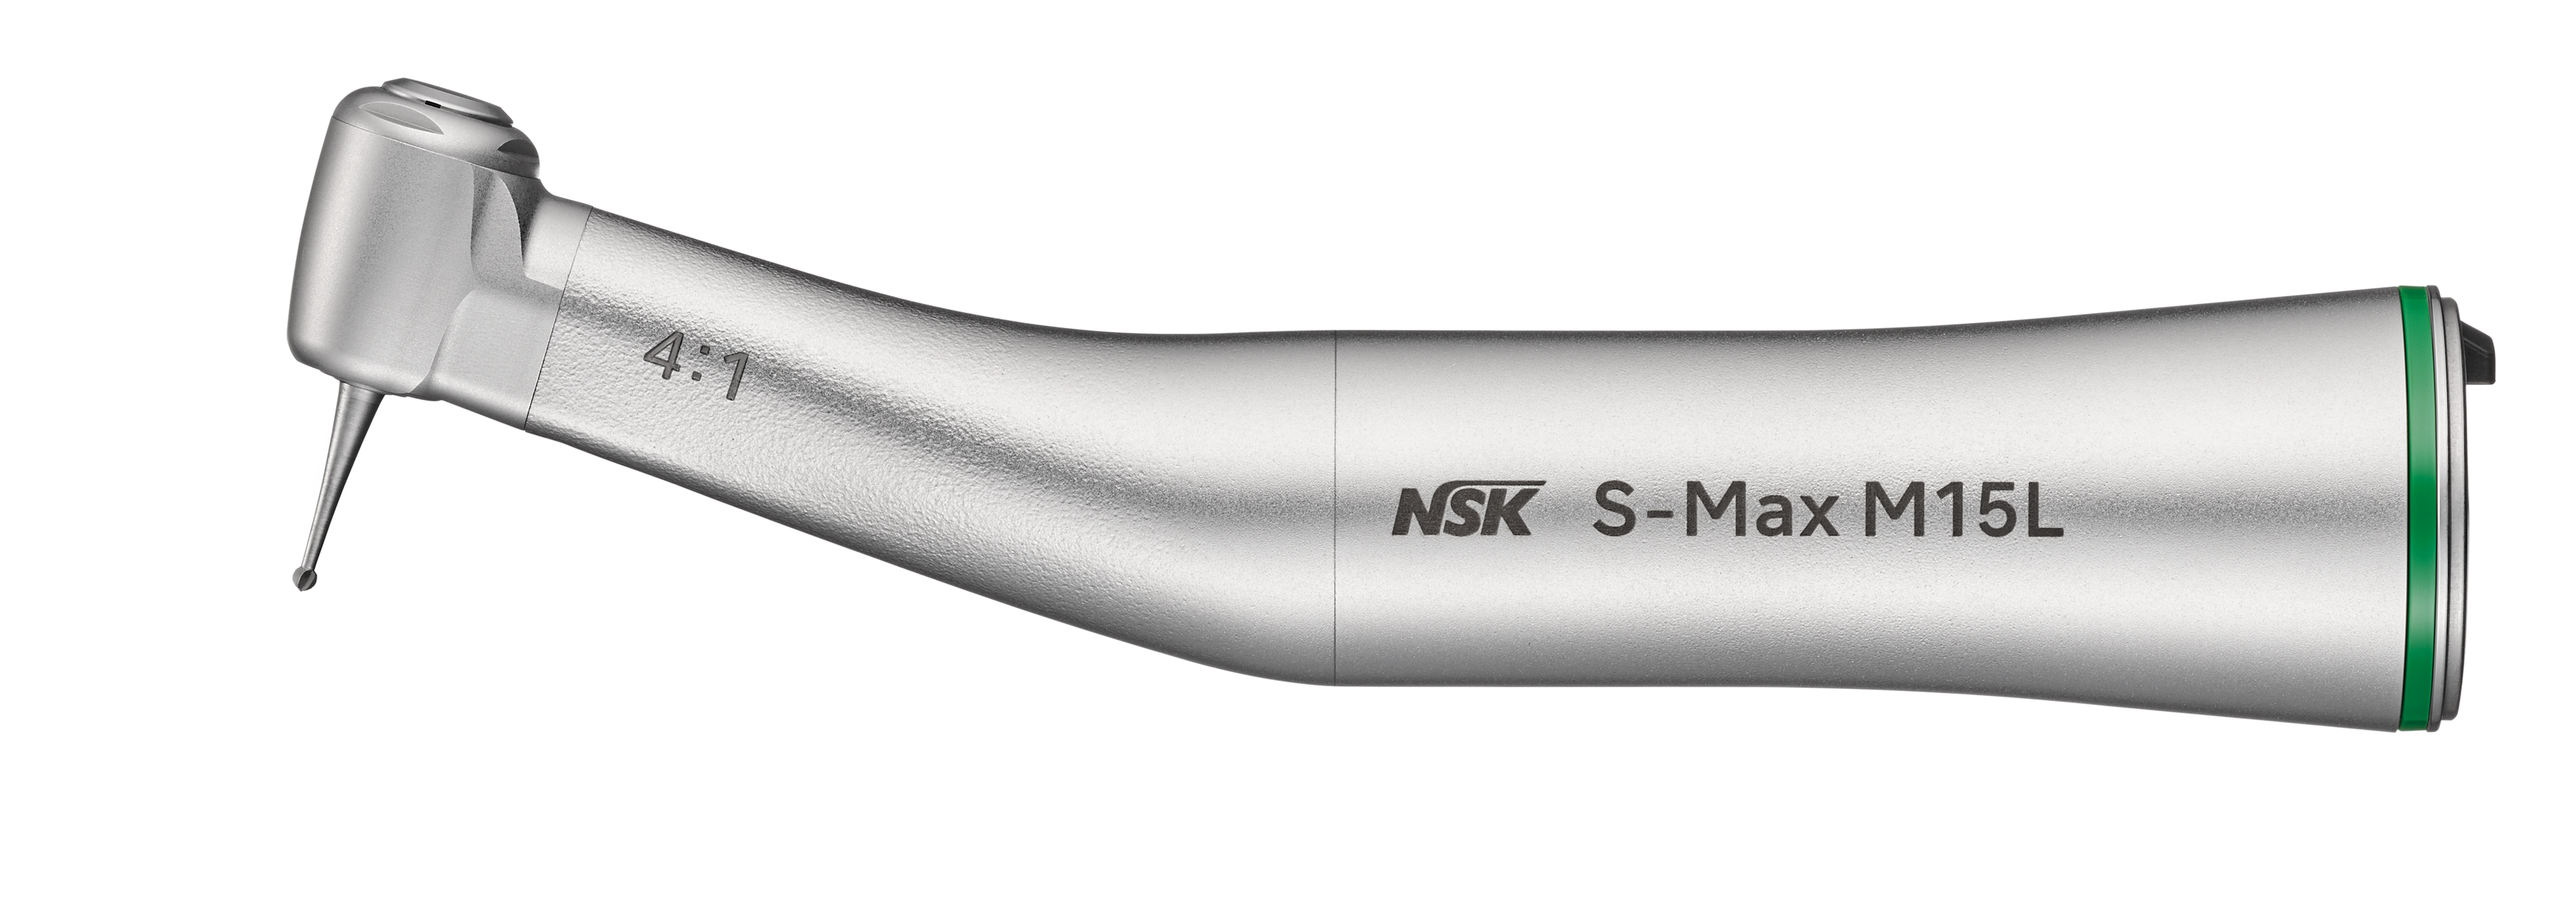 NSK S-Max M15L, Winkelstück grün 4:1 mit Licht  -  1-fach Spray, für Bohrer mit Winkelstückschaft 2.35mm, Edelstahlkörper  | Art.Nr.:  C1025